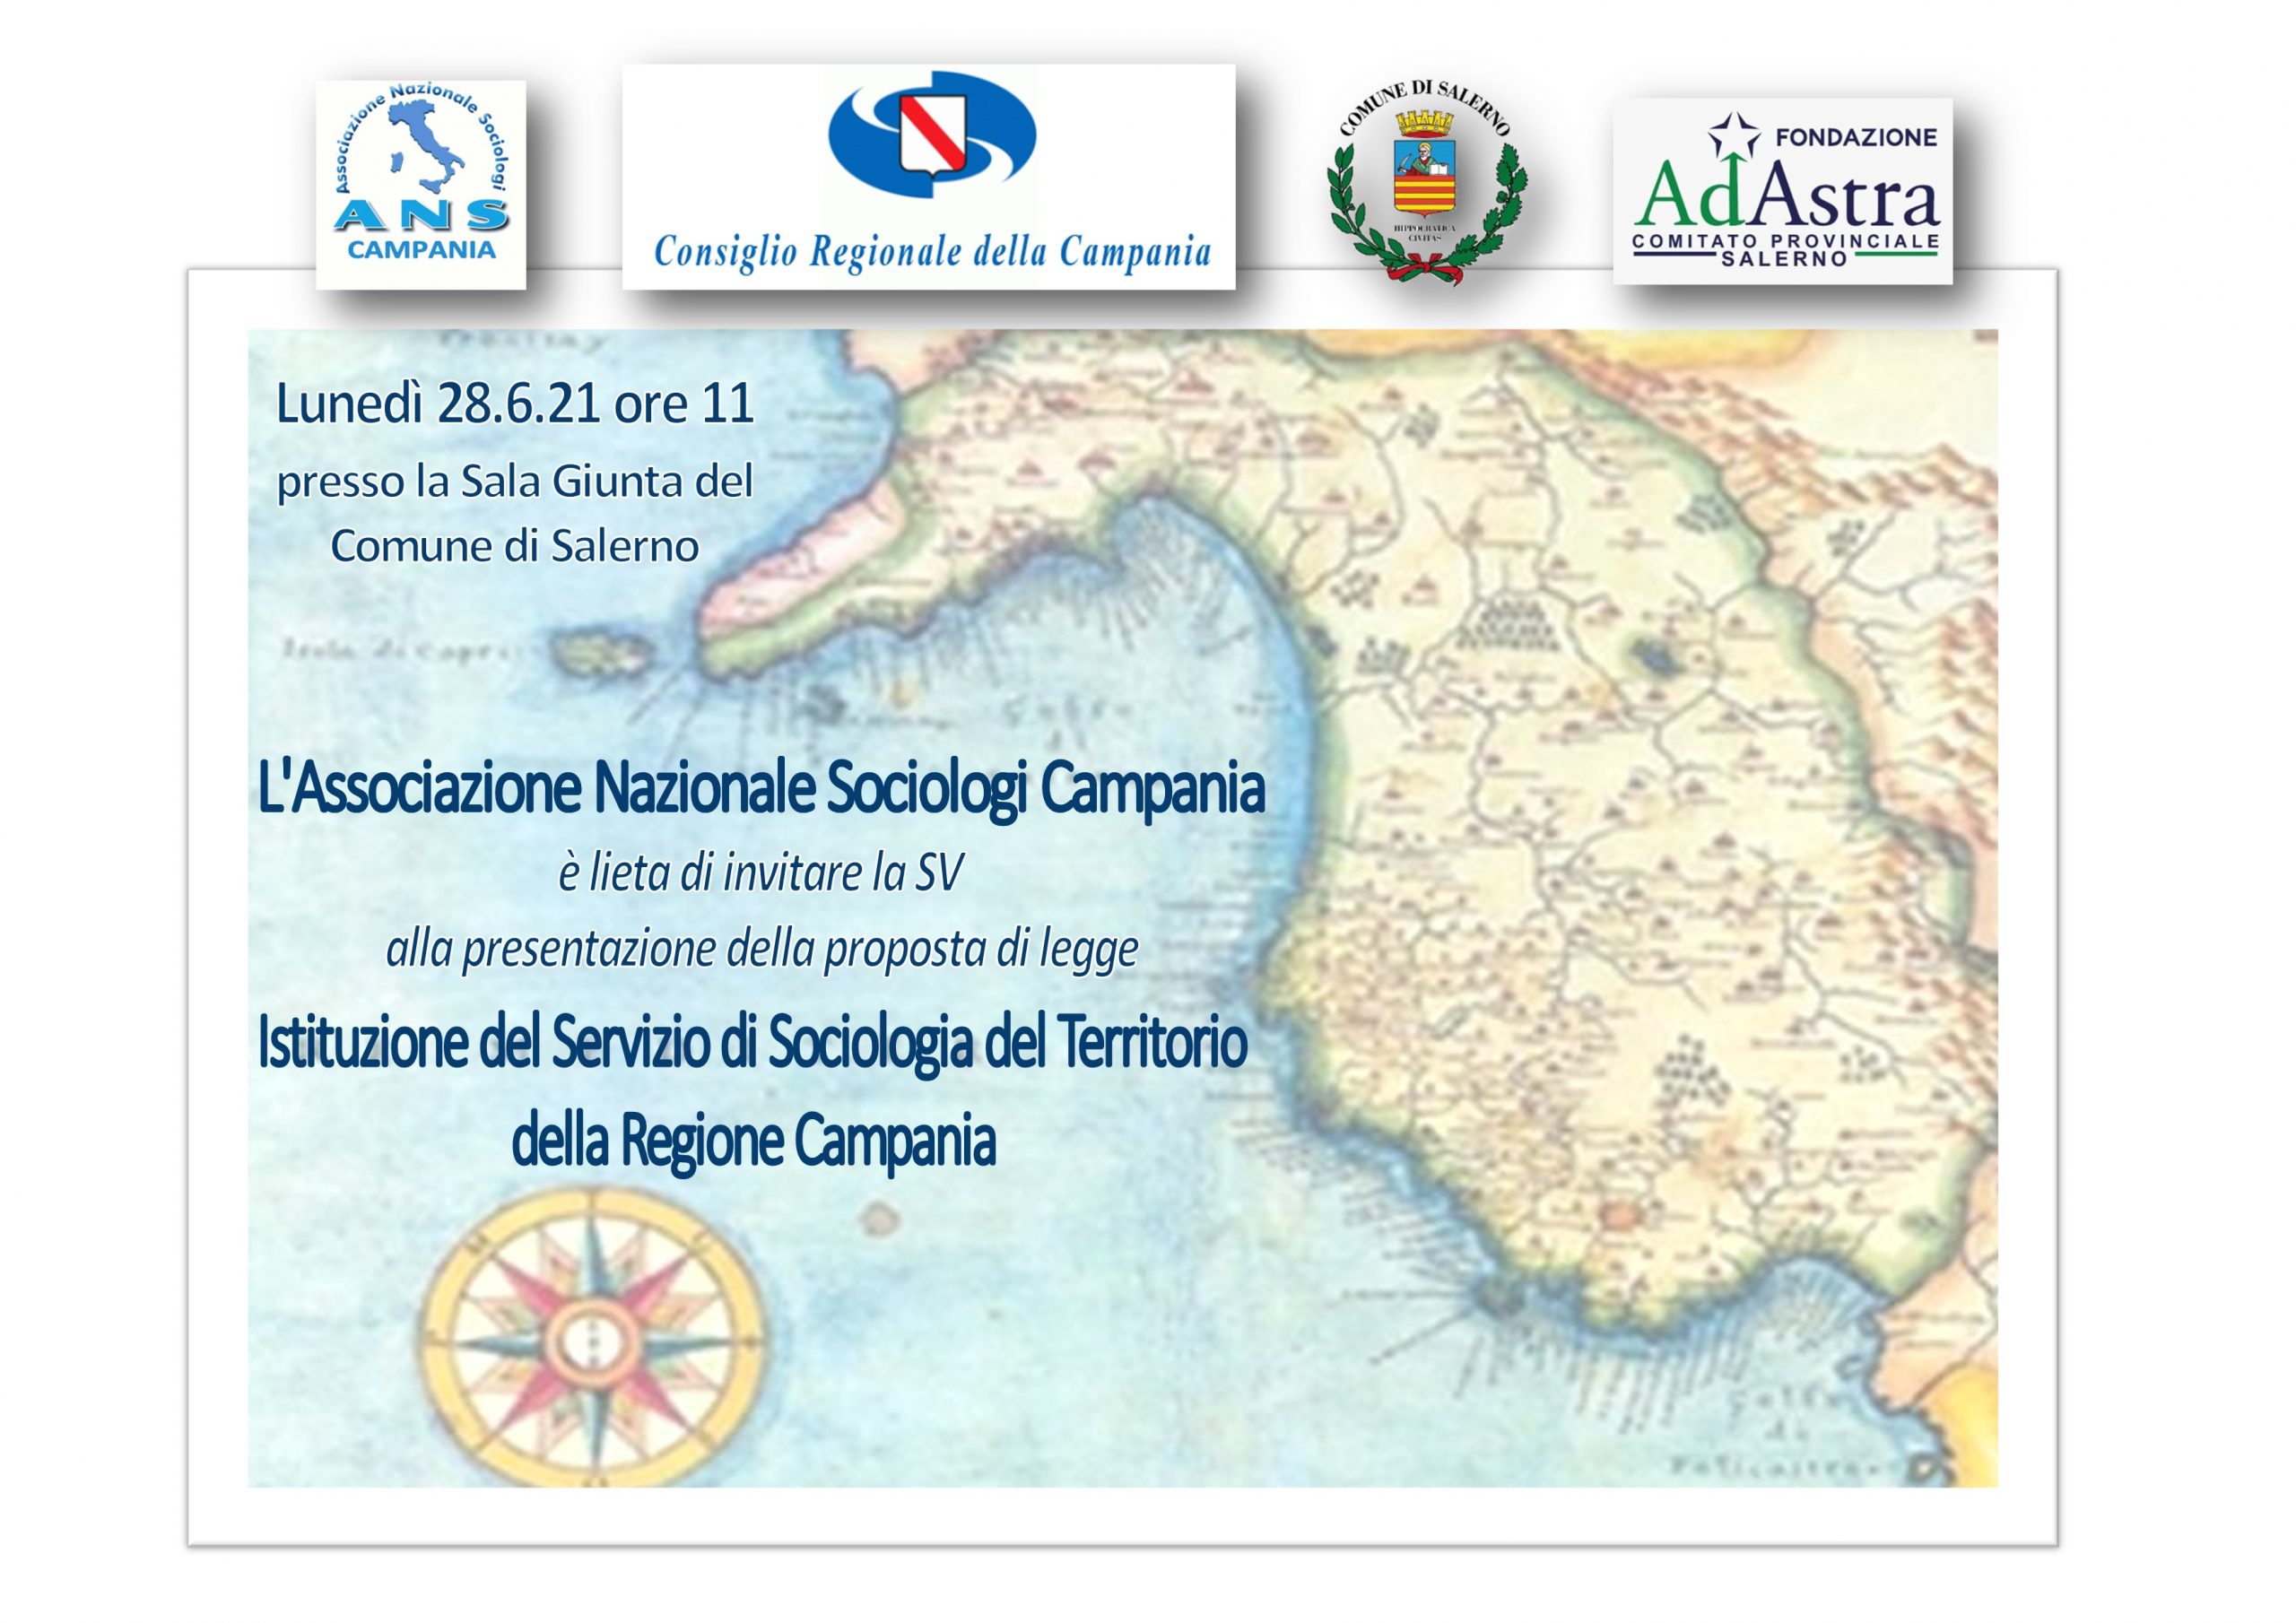 Istituzione del servizio di sociologia del territorio: Picarone presenta proposta legge